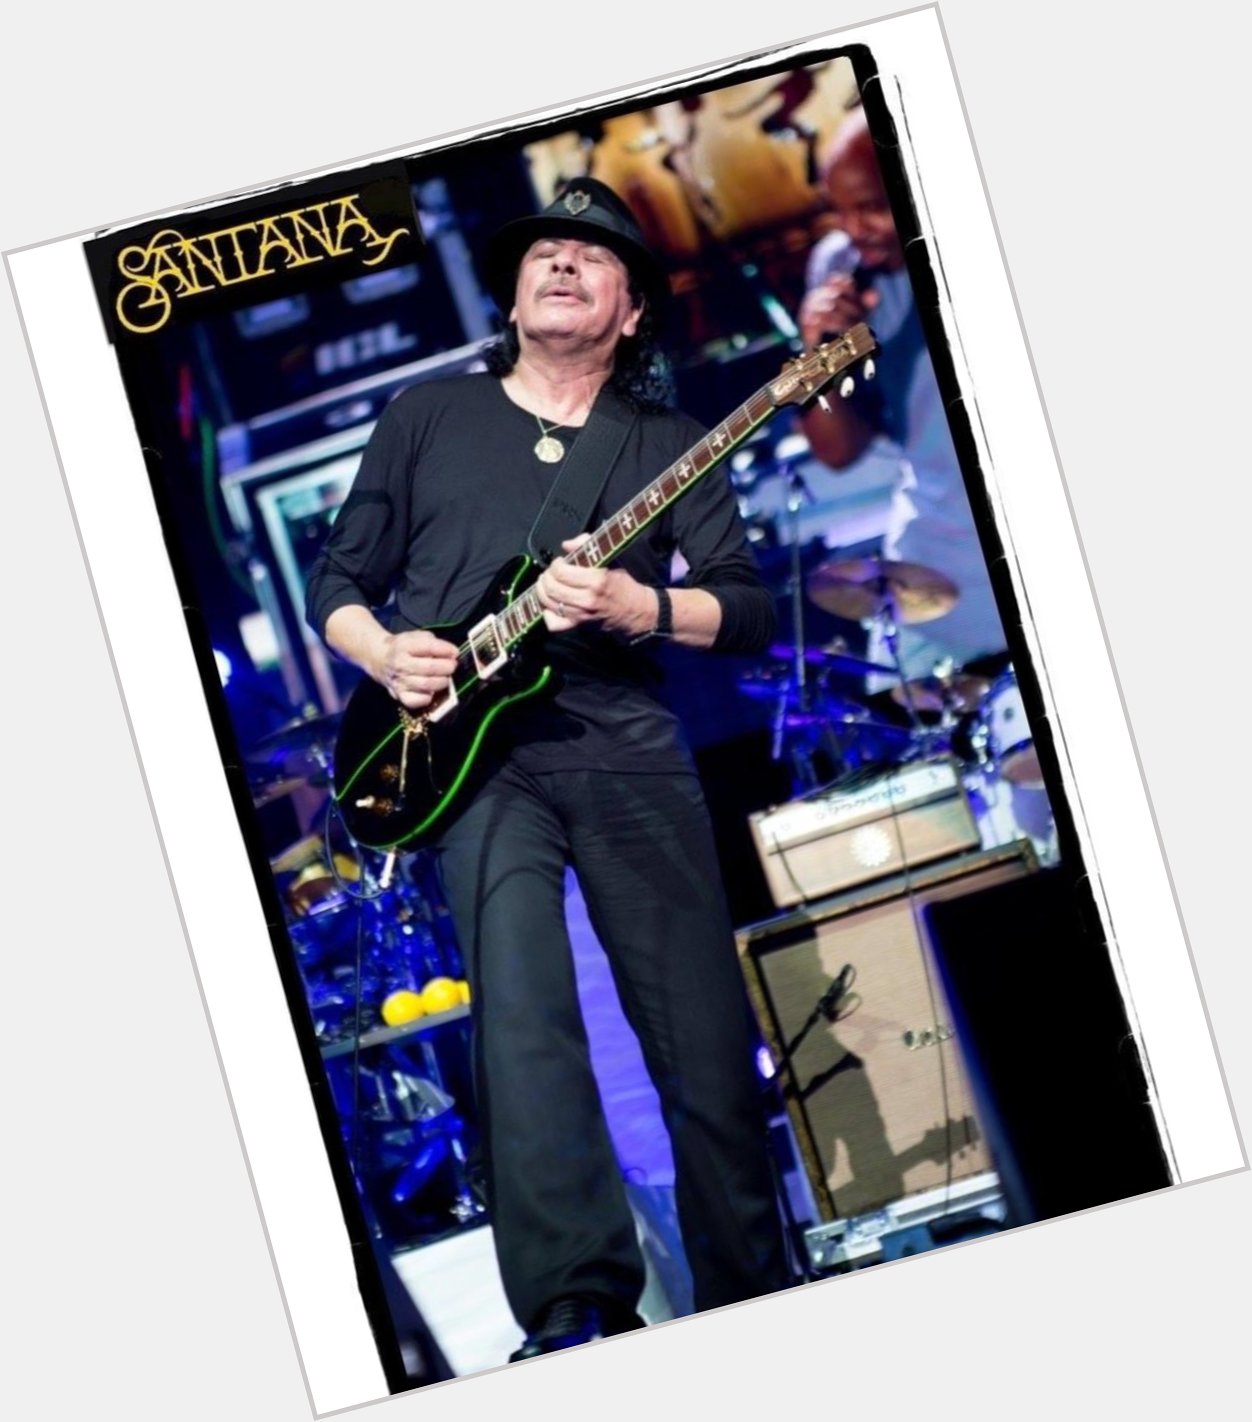 Happy Birthday - Carlos Santana! Wishing you a very Happy Birthday! 
photo: 